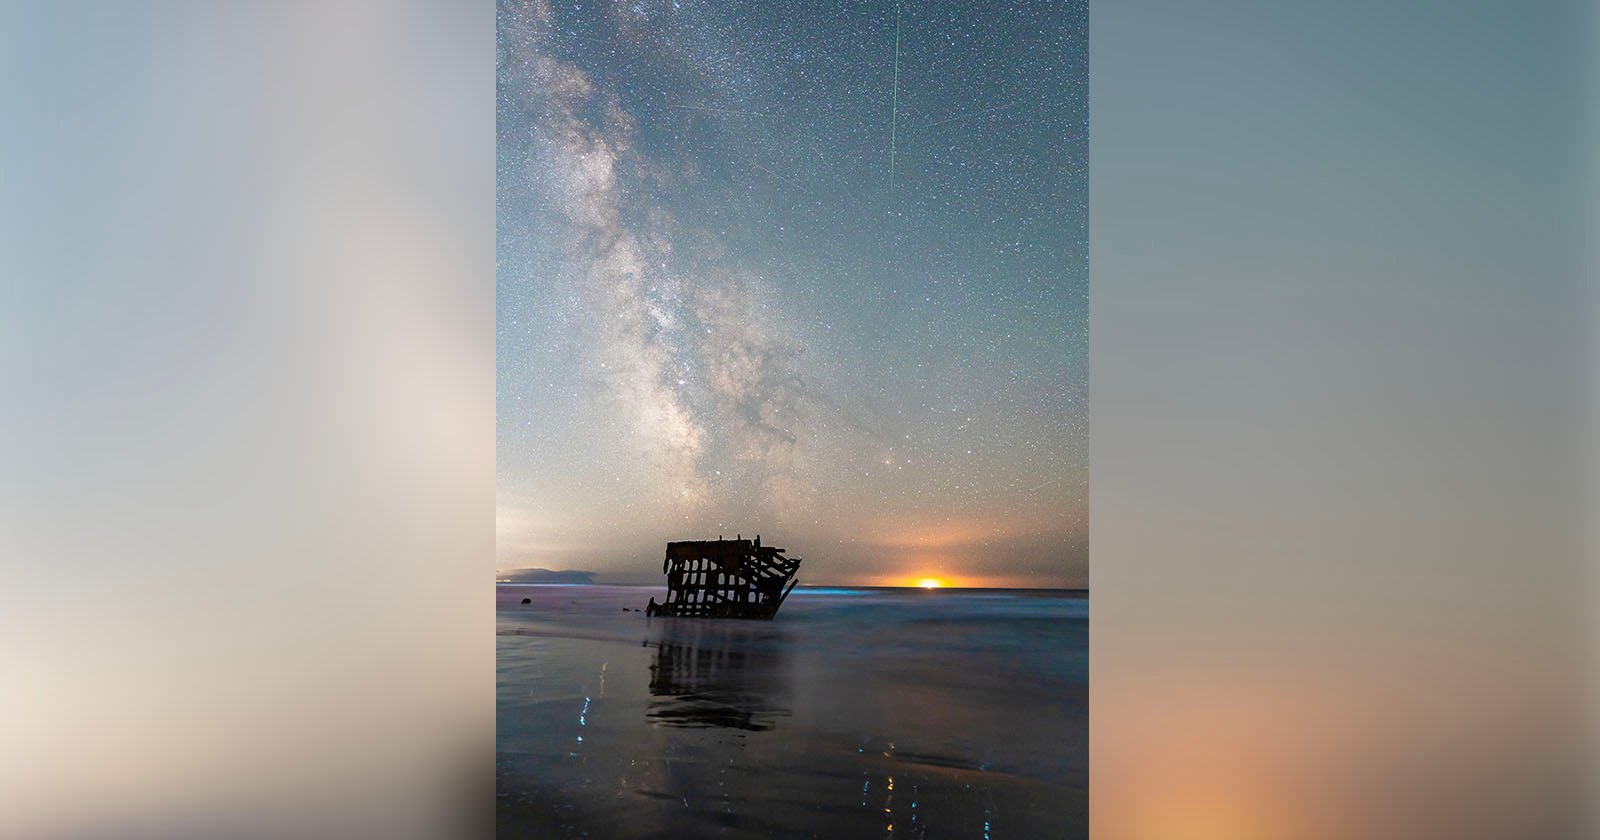 Fotograf fängt Meteore, die Milchstraße und Biolumineszenz in einem Foto ein